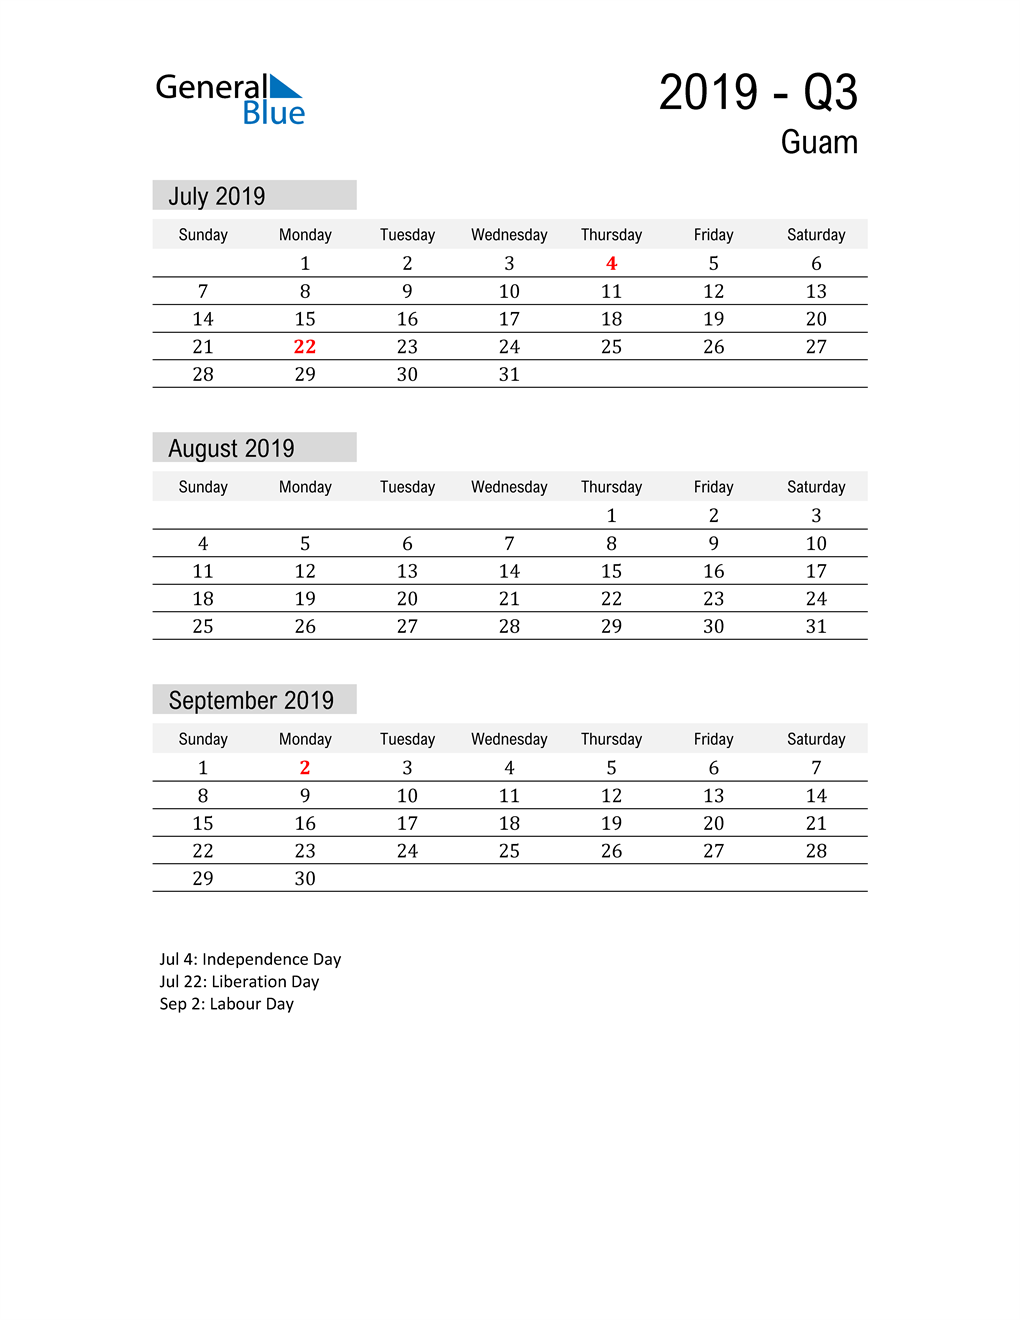  Guam Quarter 3 2019 Calendar